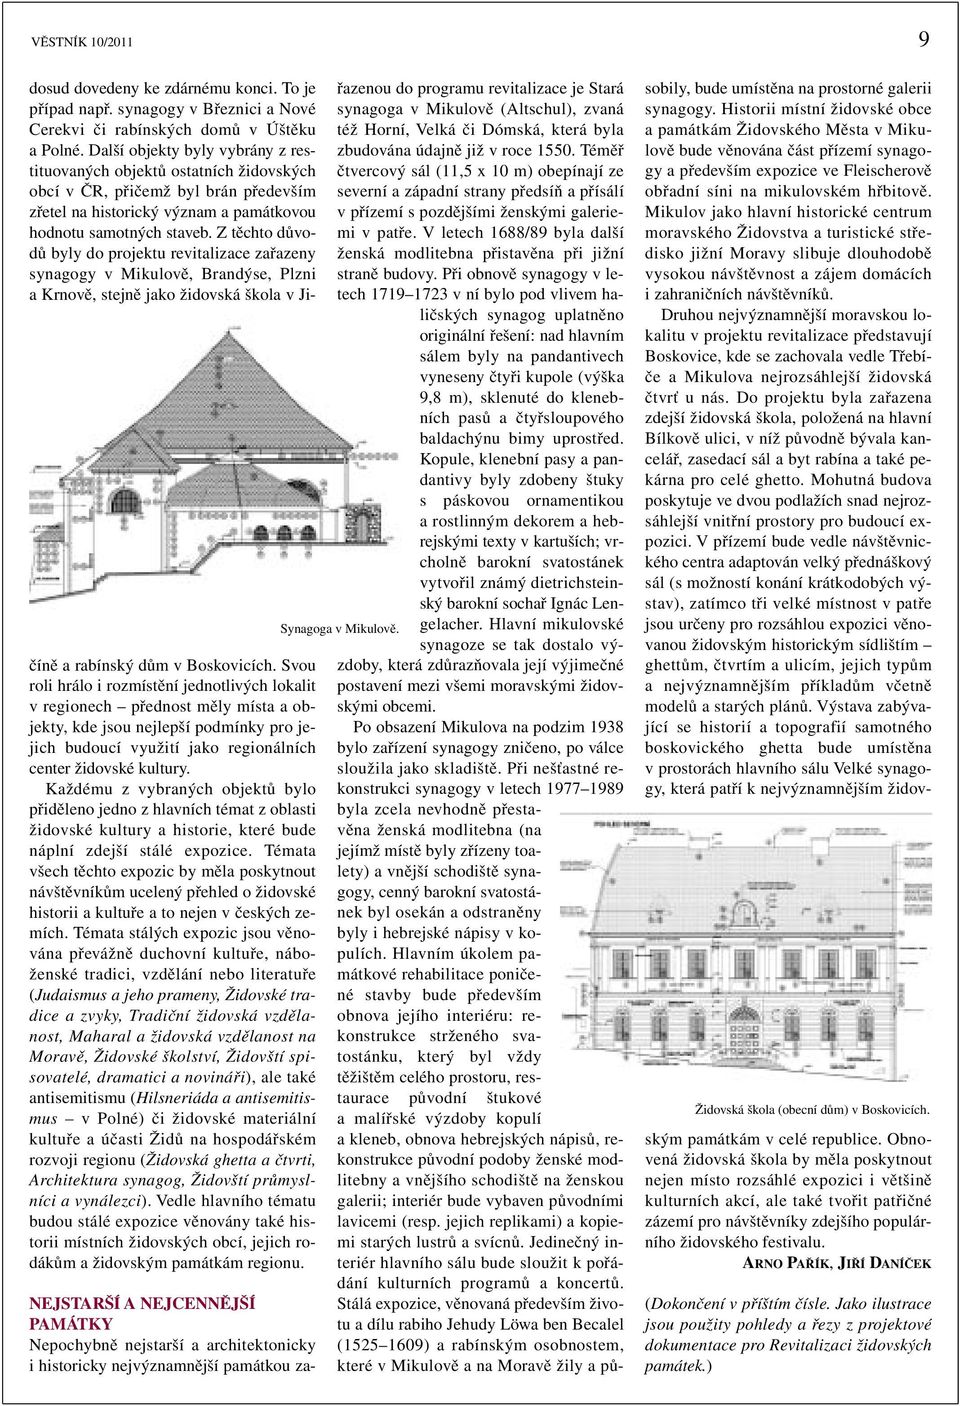 Z těchto důvodů byly do projektu revitalizace zařazeny synagogy v Mikulově, Brandýse, Plzni a Krnově, stejně jako židovská škola v Jičíně a rabínský dům v Boskovicích.